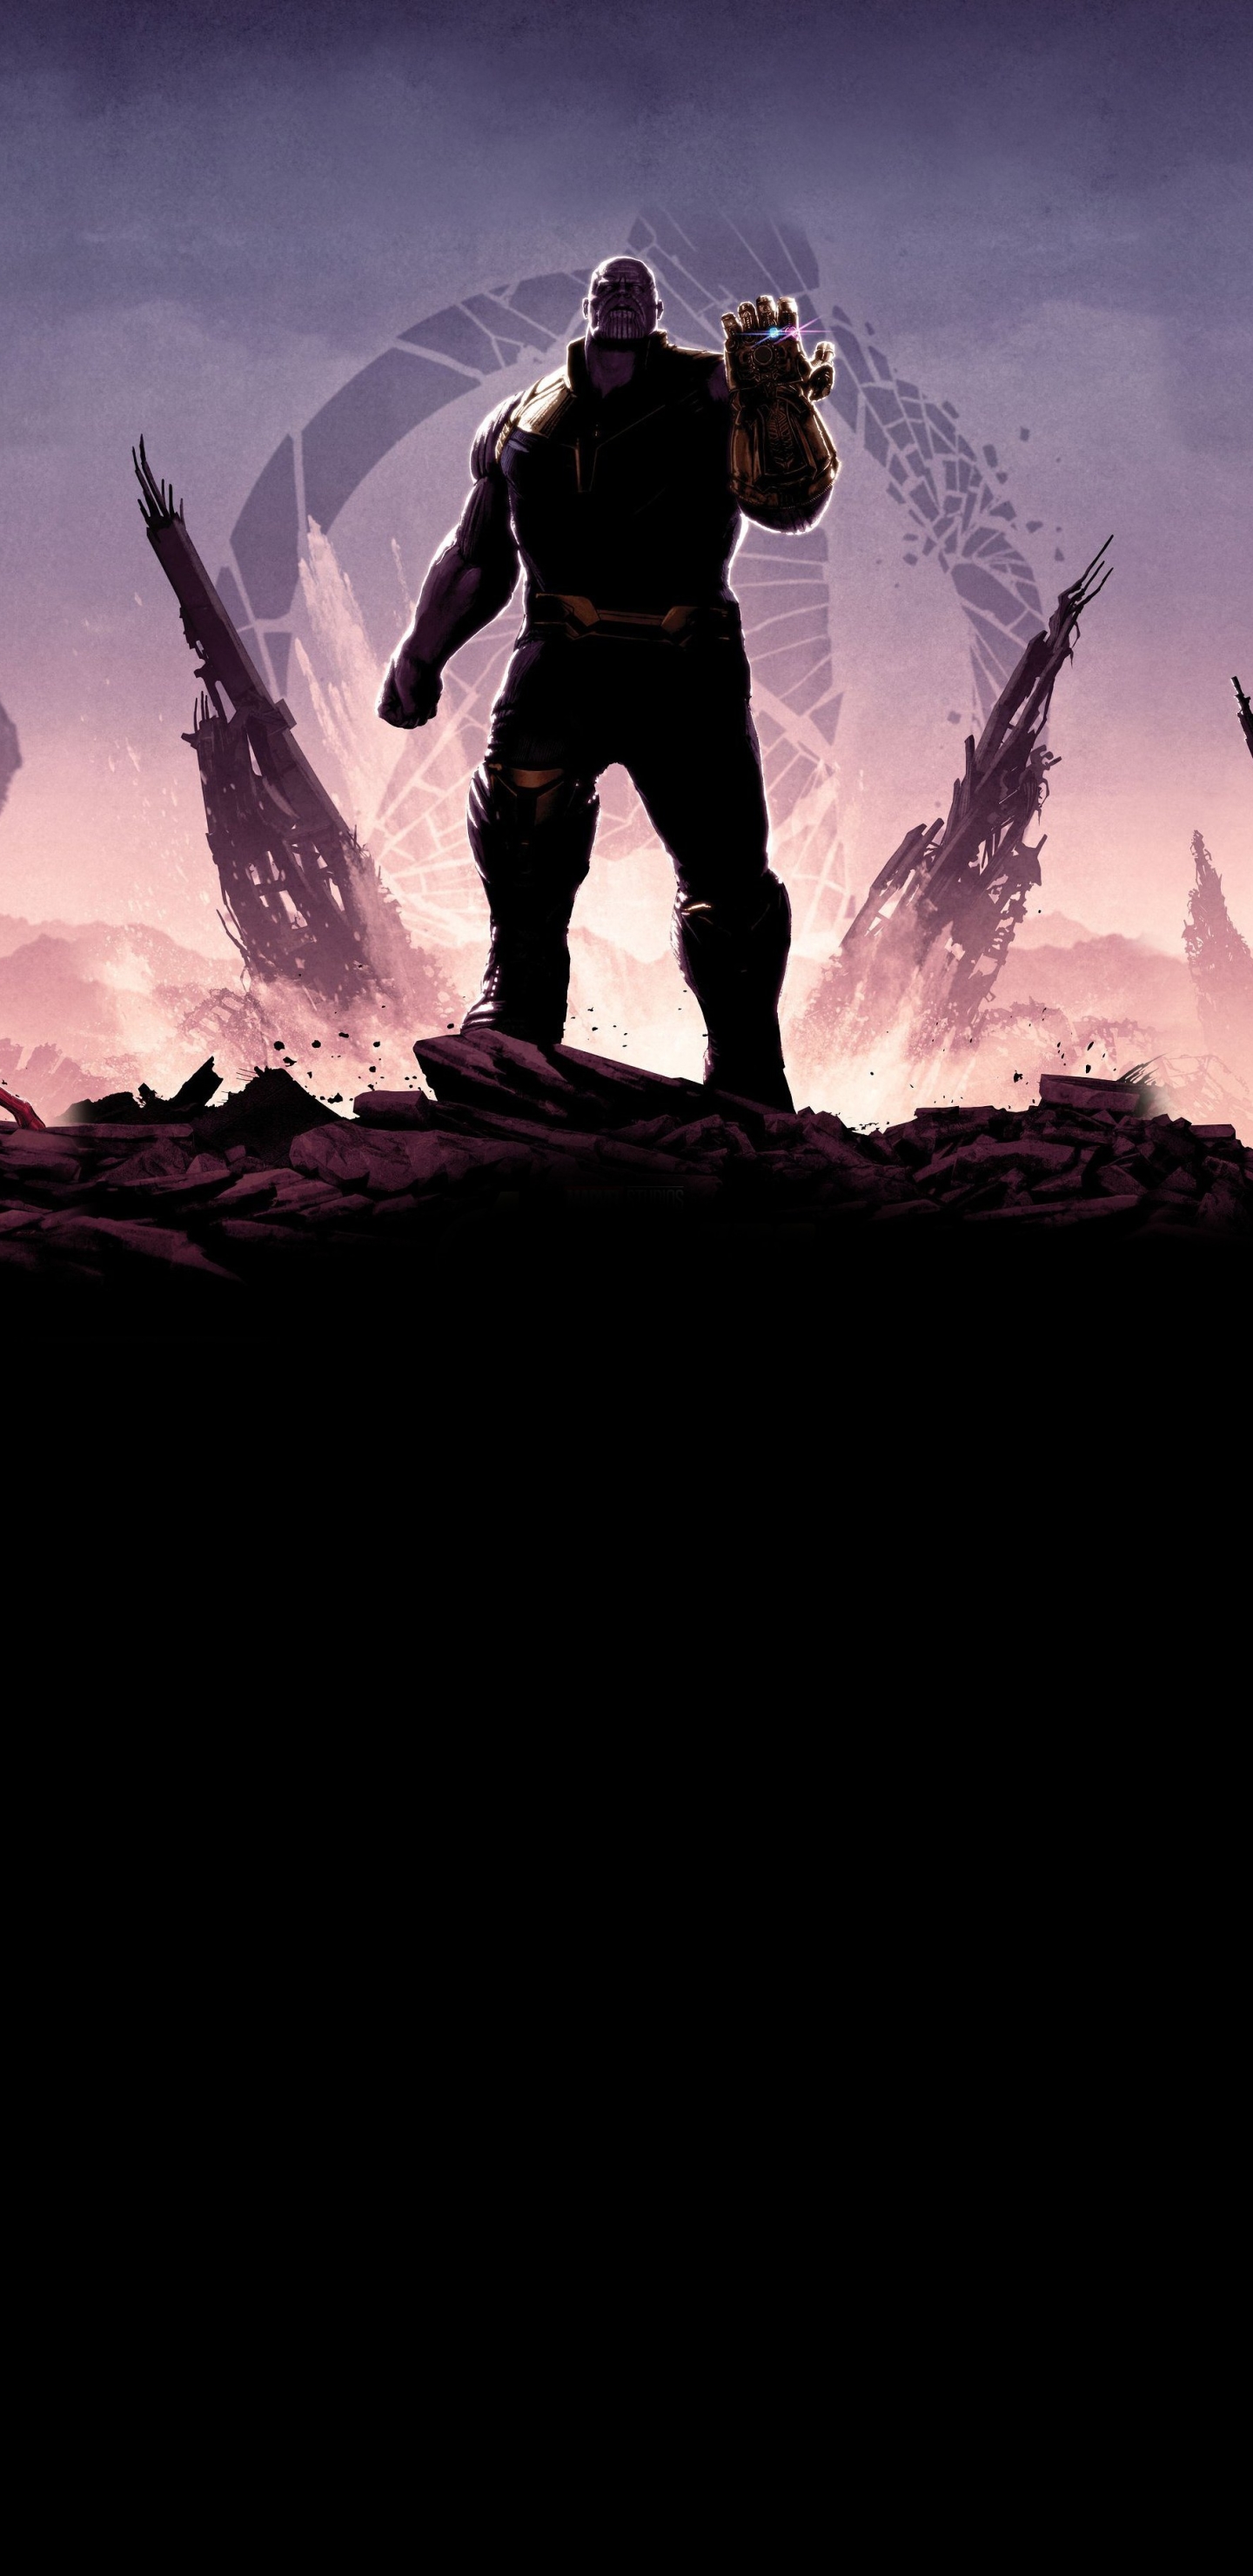 Descarga gratuita de fondo de pantalla para móvil de Los Vengadores, Películas, Thanos, Guantelete Infinito, Vengadores: Guerra Infinita.